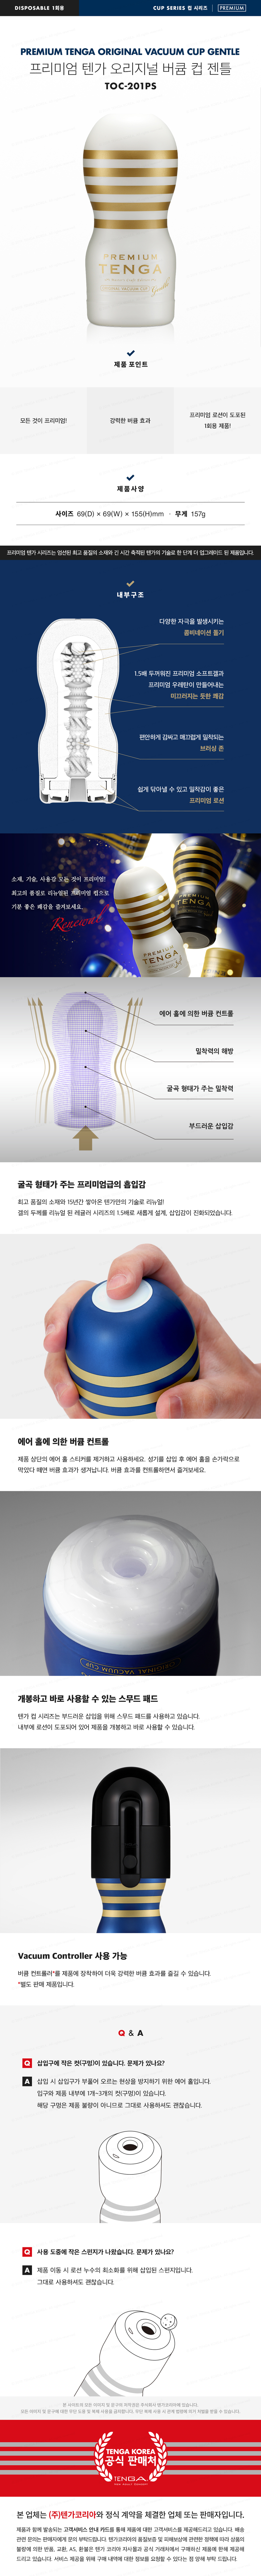 프리미엄 텐가 오리지널 버큠 컵 젠틀 PREMIUM TENGA ORIGINAL VACUUM CUP GENTLE